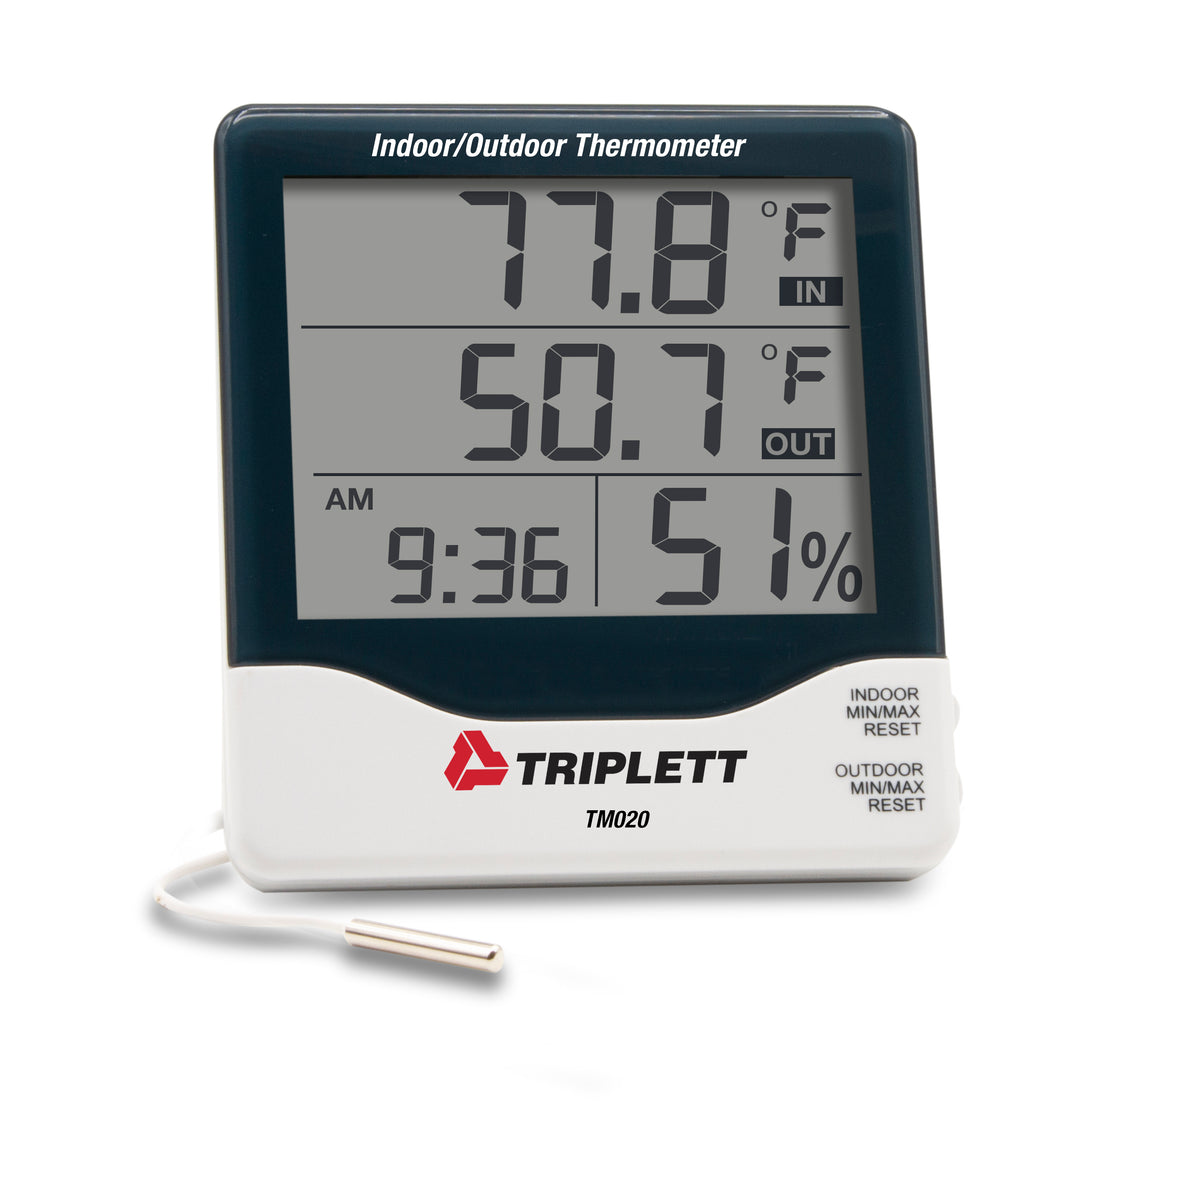 Triplett TM020 - Indoor/Outdoor Thermometer